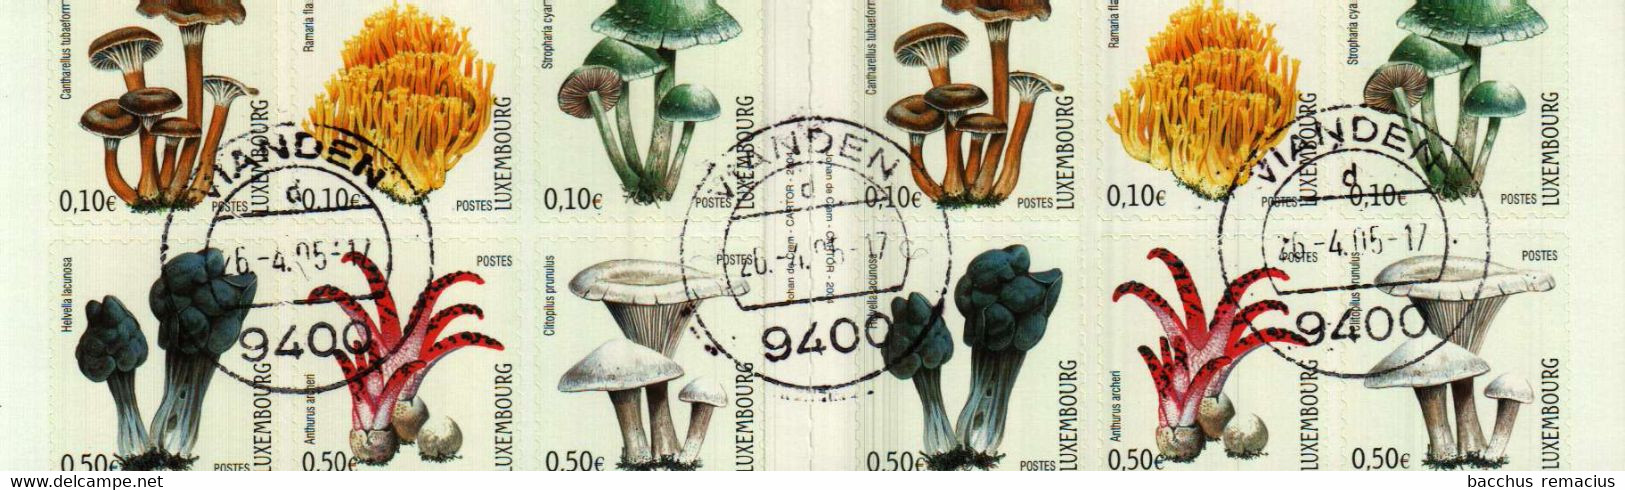 Luxembourg Carnet De Timbres-Poste Autocollants (6x0,50+6x0,10 Euro) Champignons Pilze Mushrooms 2004 Oblitérés VIANDEN - Carnets